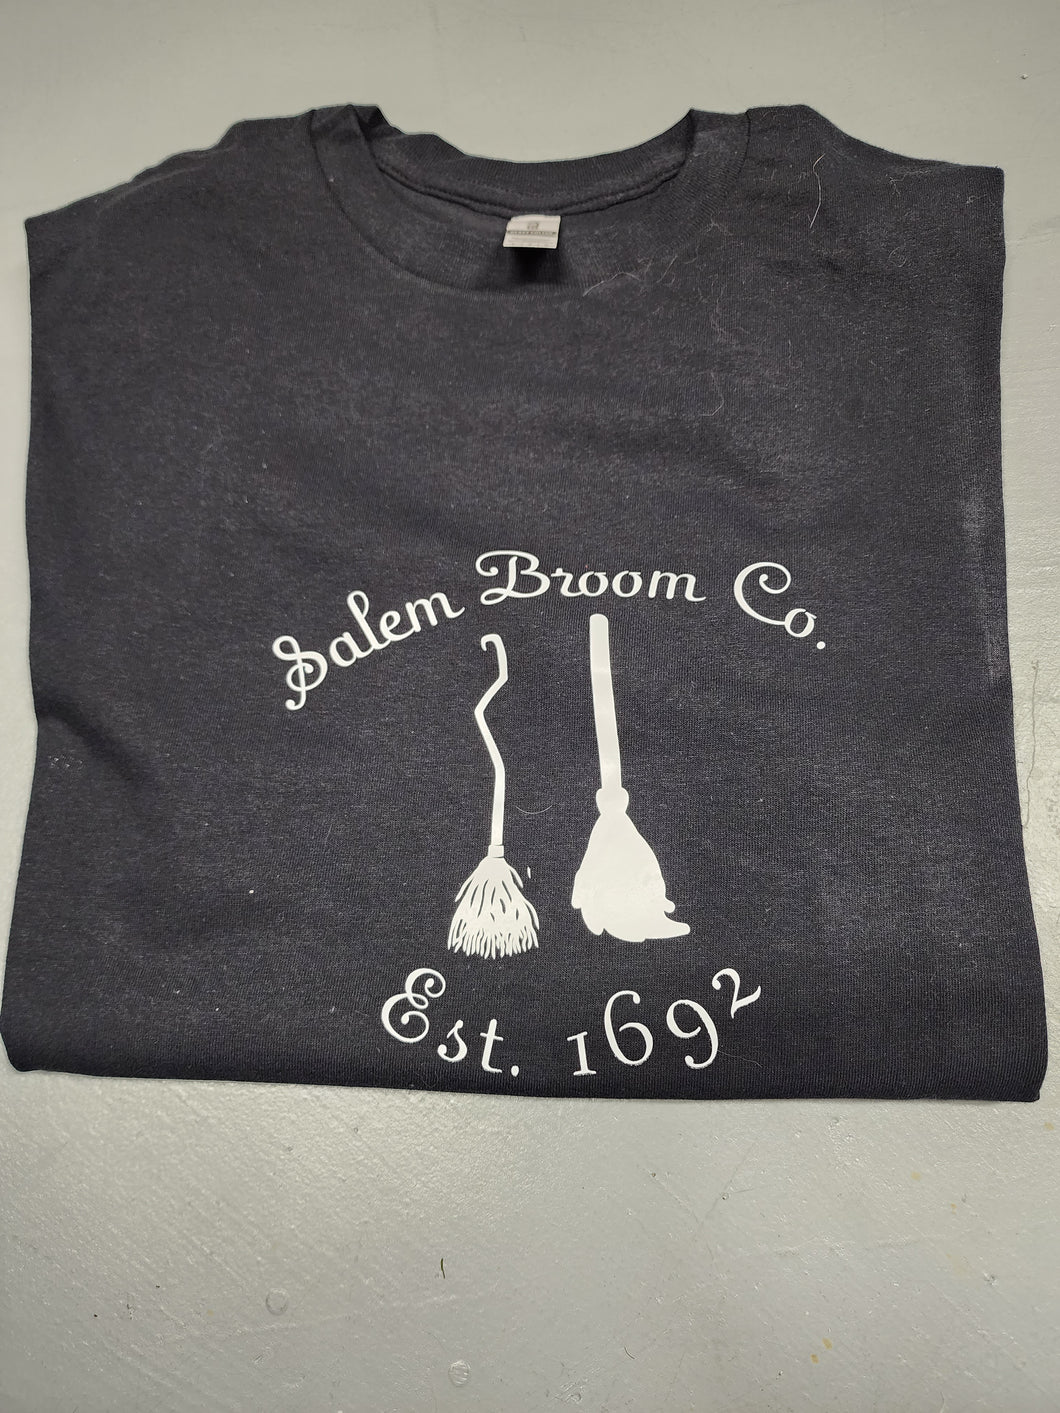 Salem Broom Co. tshirt